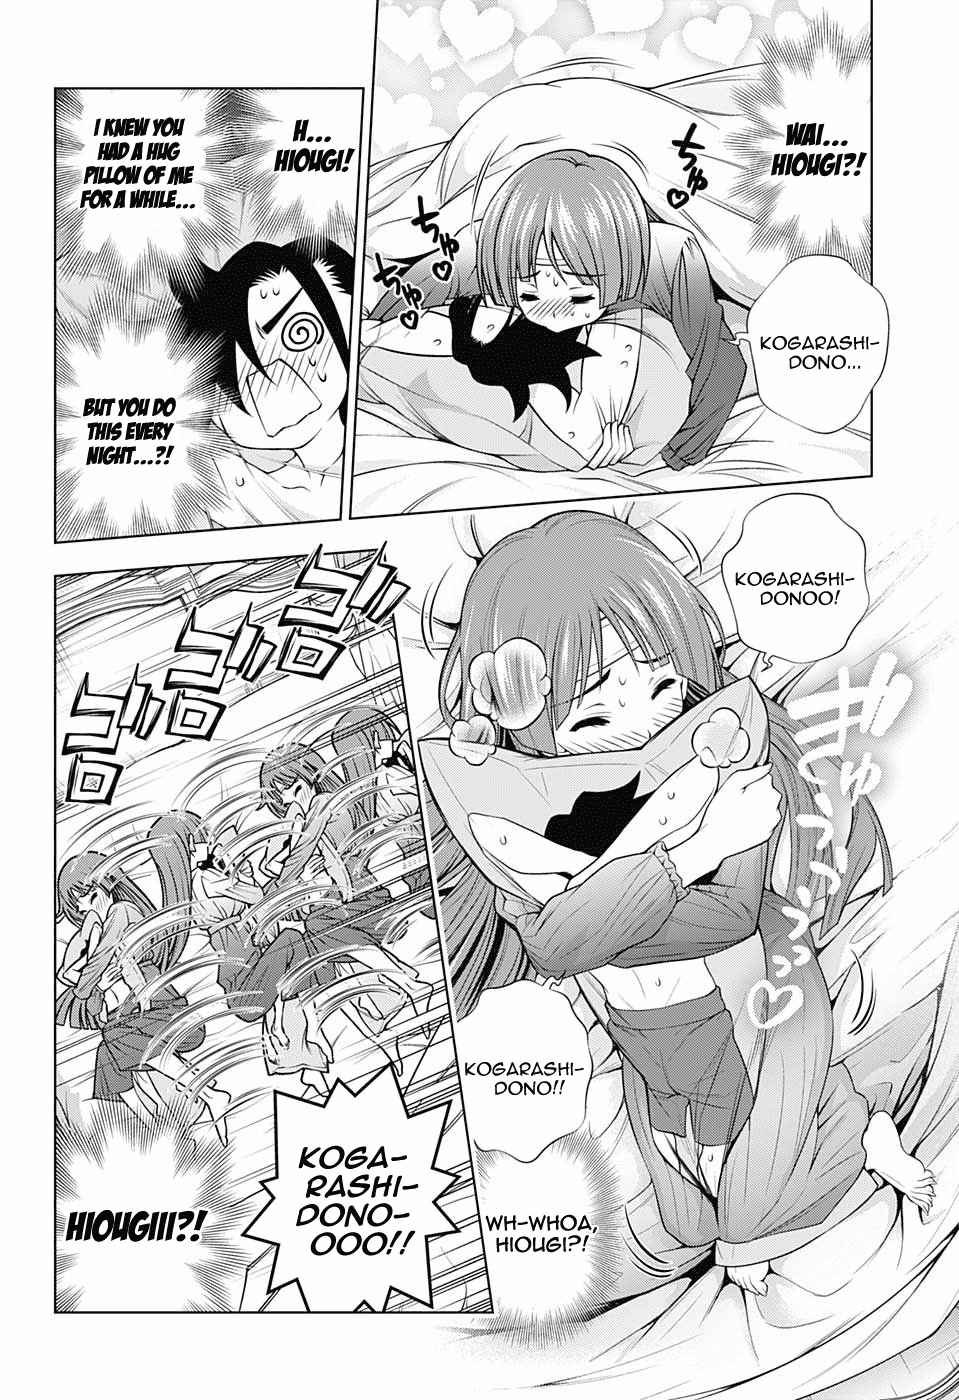 Yuragi sou no Yuuna san Vol. 20 Ch. 171 Karura sama and The Hug Pillow